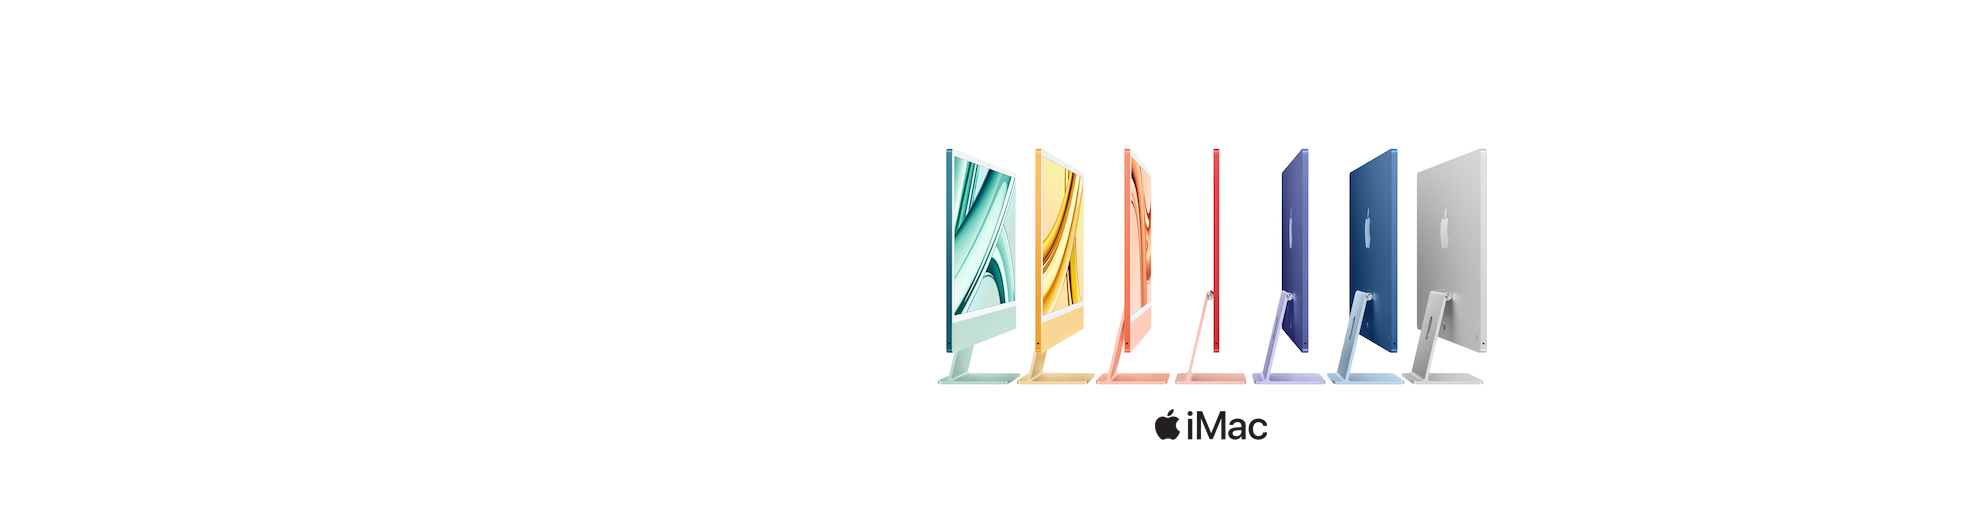 Apple iMac Banner